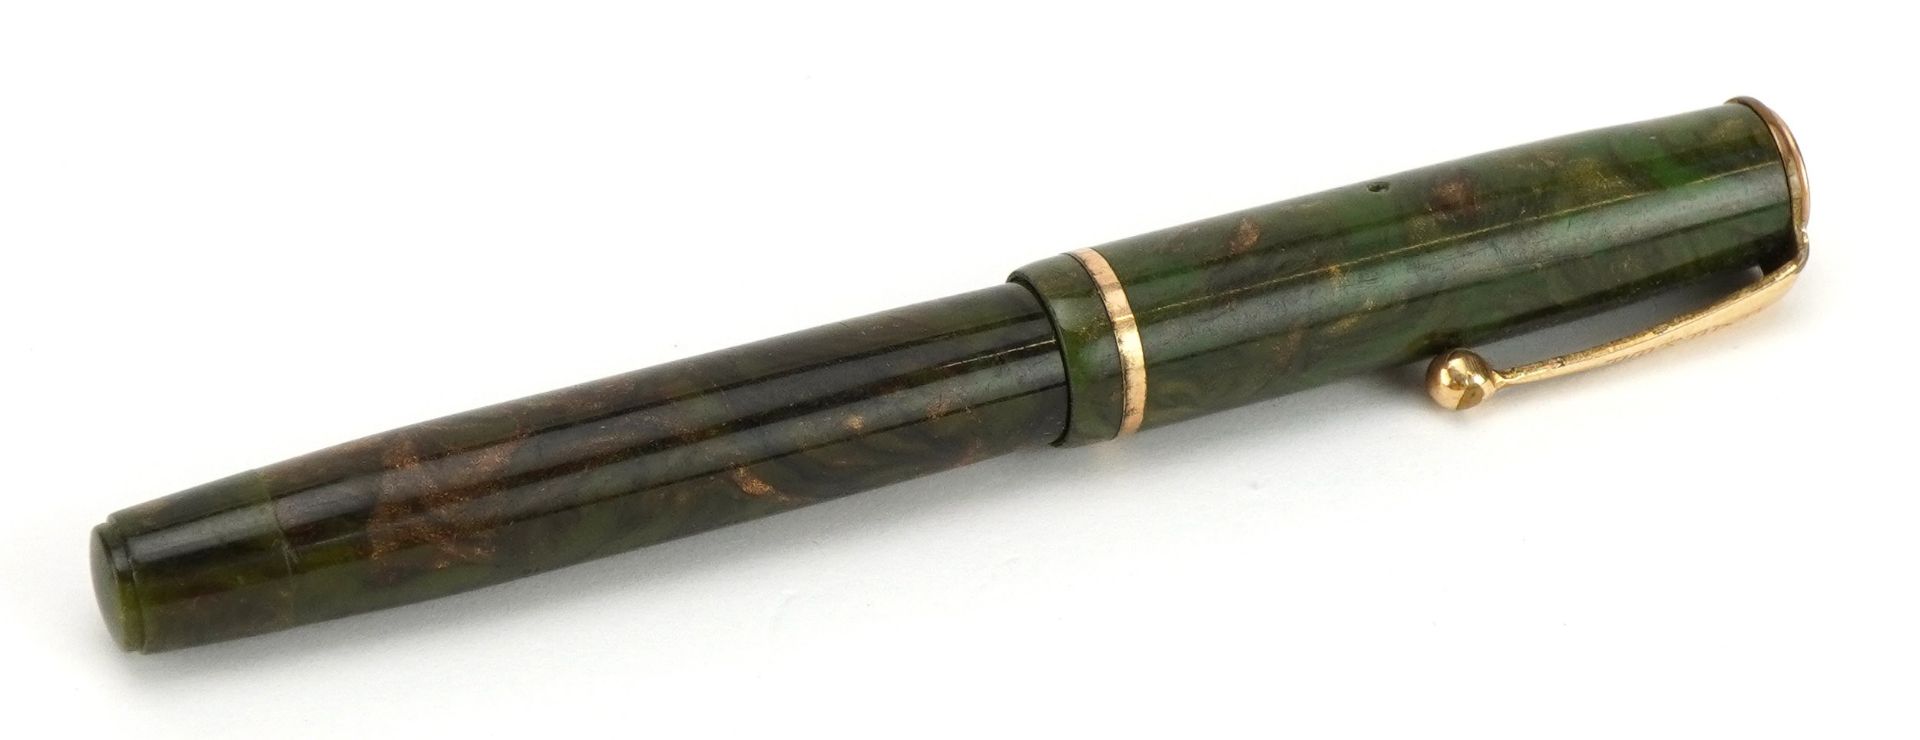 Green Parker Moderne Duette fountain pen, 11cm in length